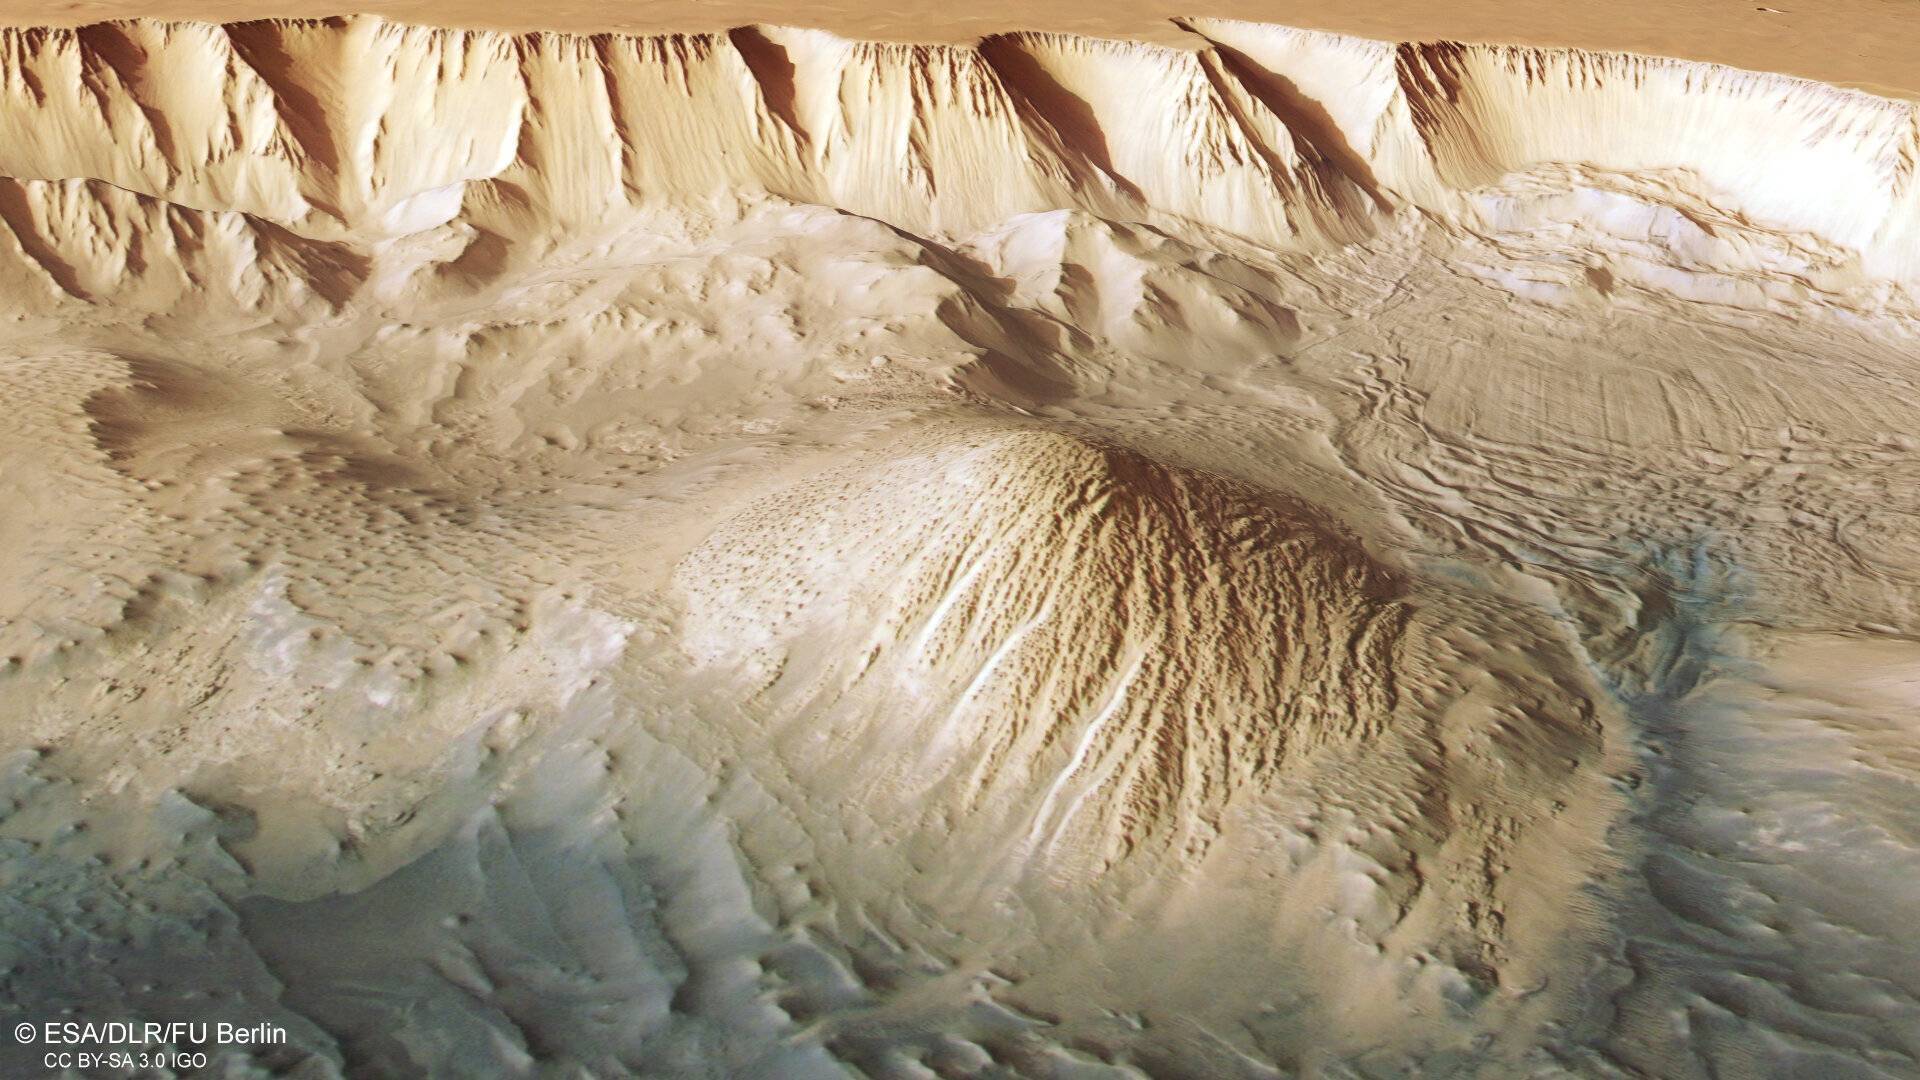 وكالة الفضاء الأوروبية تنشر صور مثيرة لوادي مارينر العملاق على كوكب المريخ